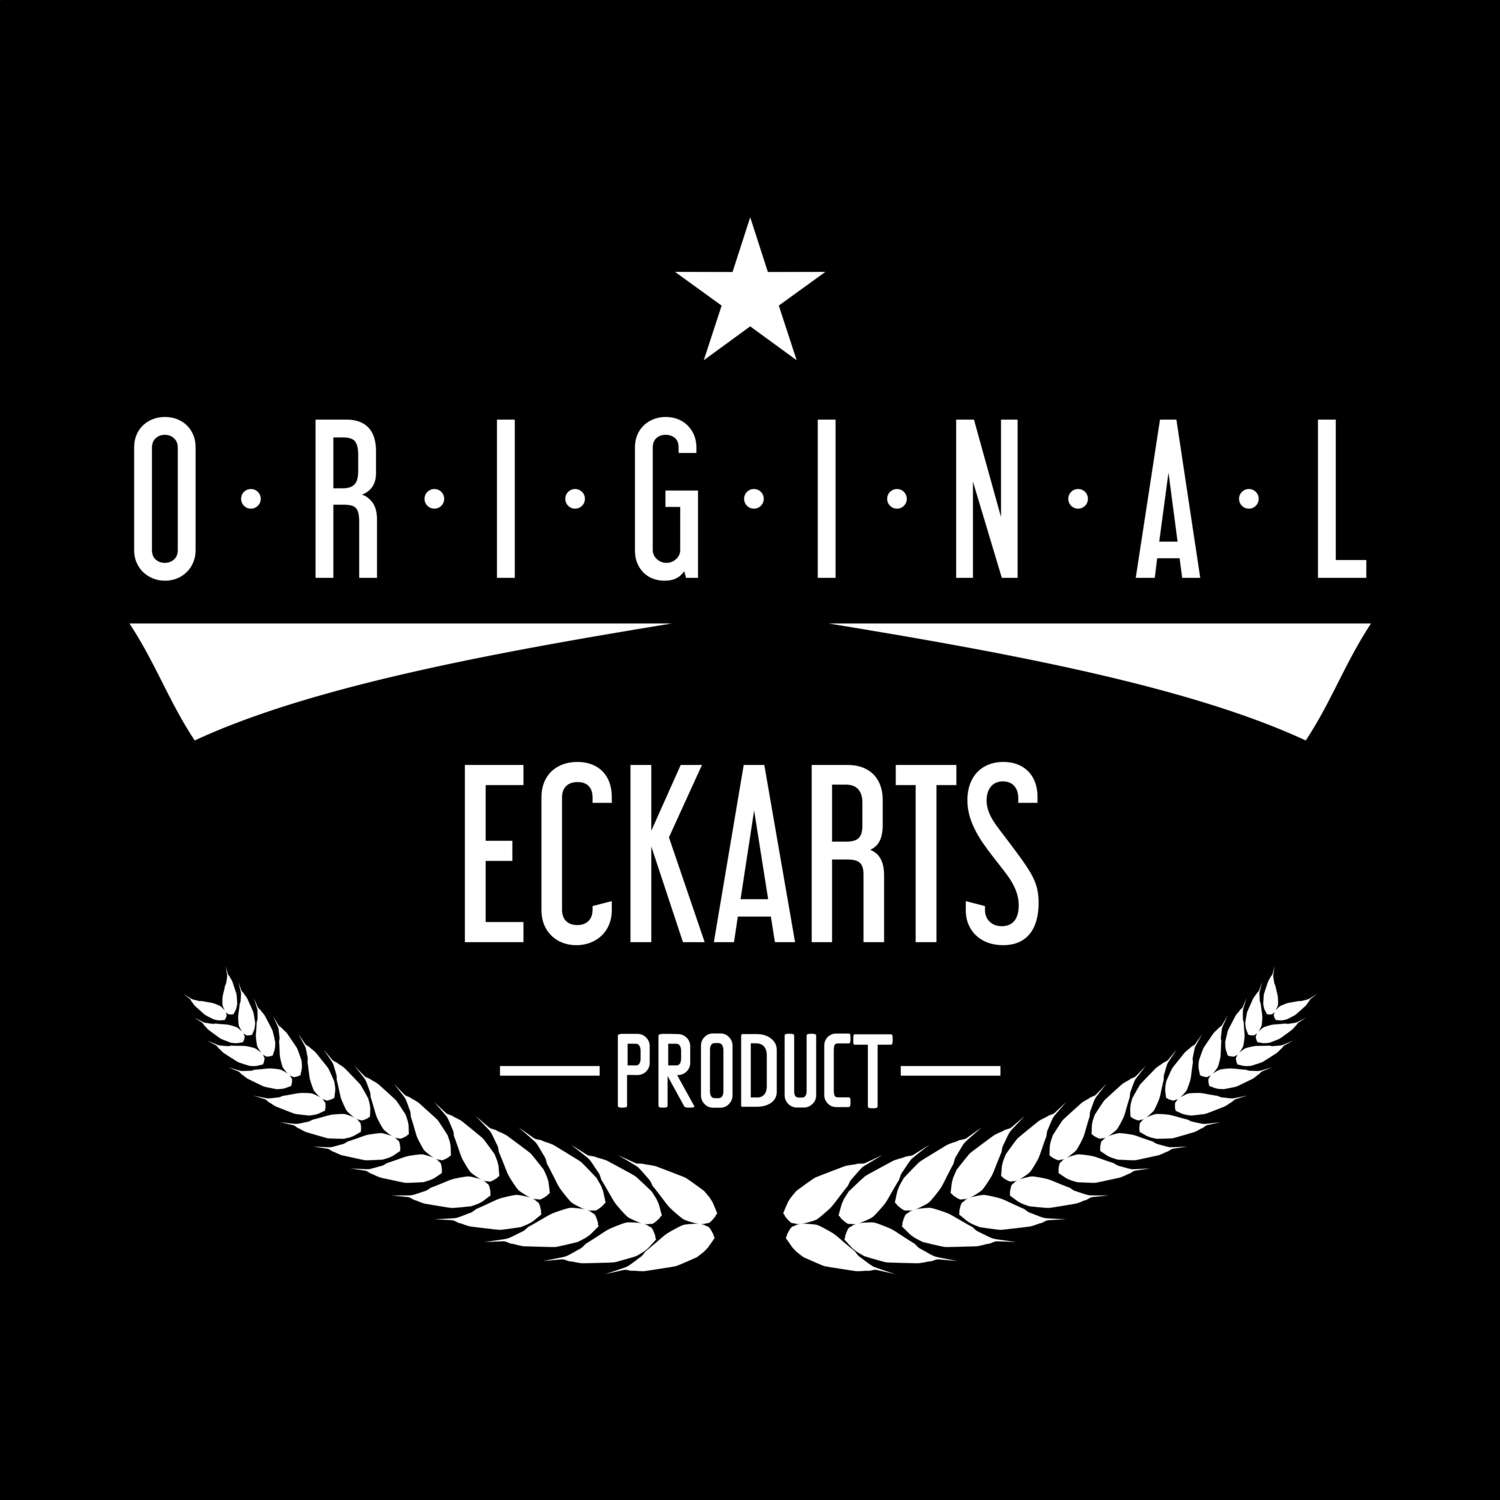 Eckarts T-Shirt »Original Product«